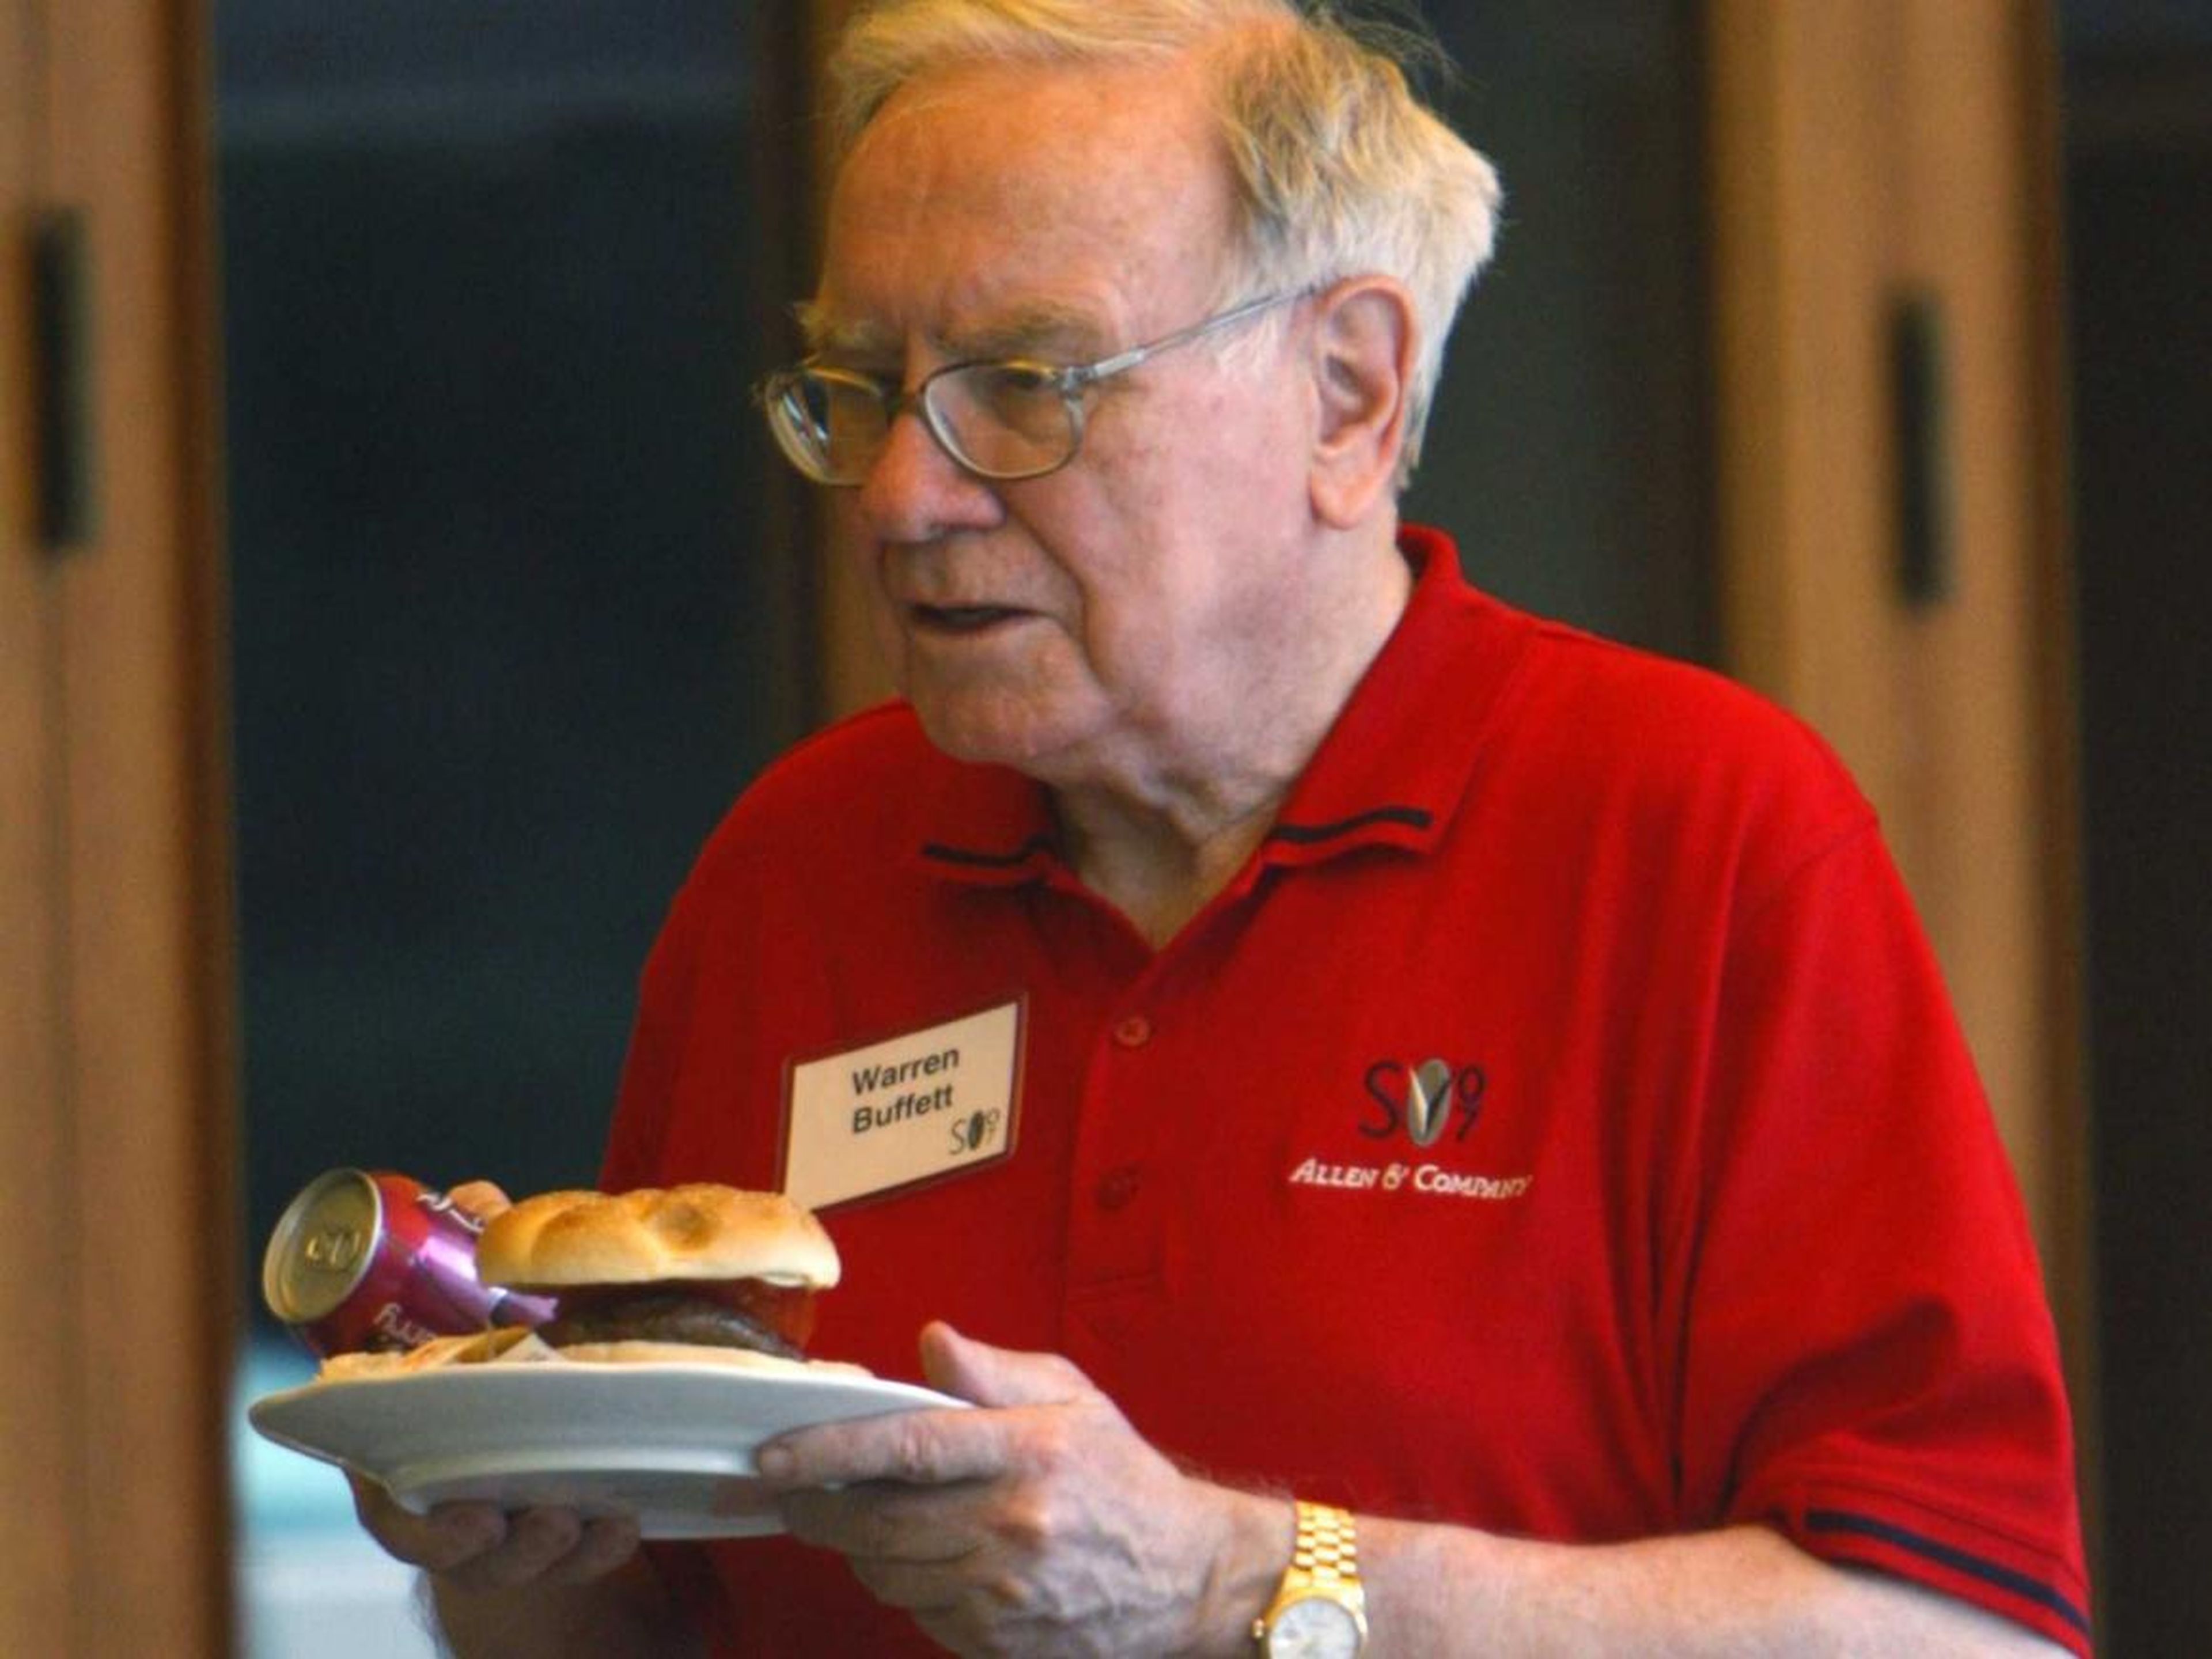 El multimillonario Warren Buffett con una hamburguesa y una bebida en la mano.